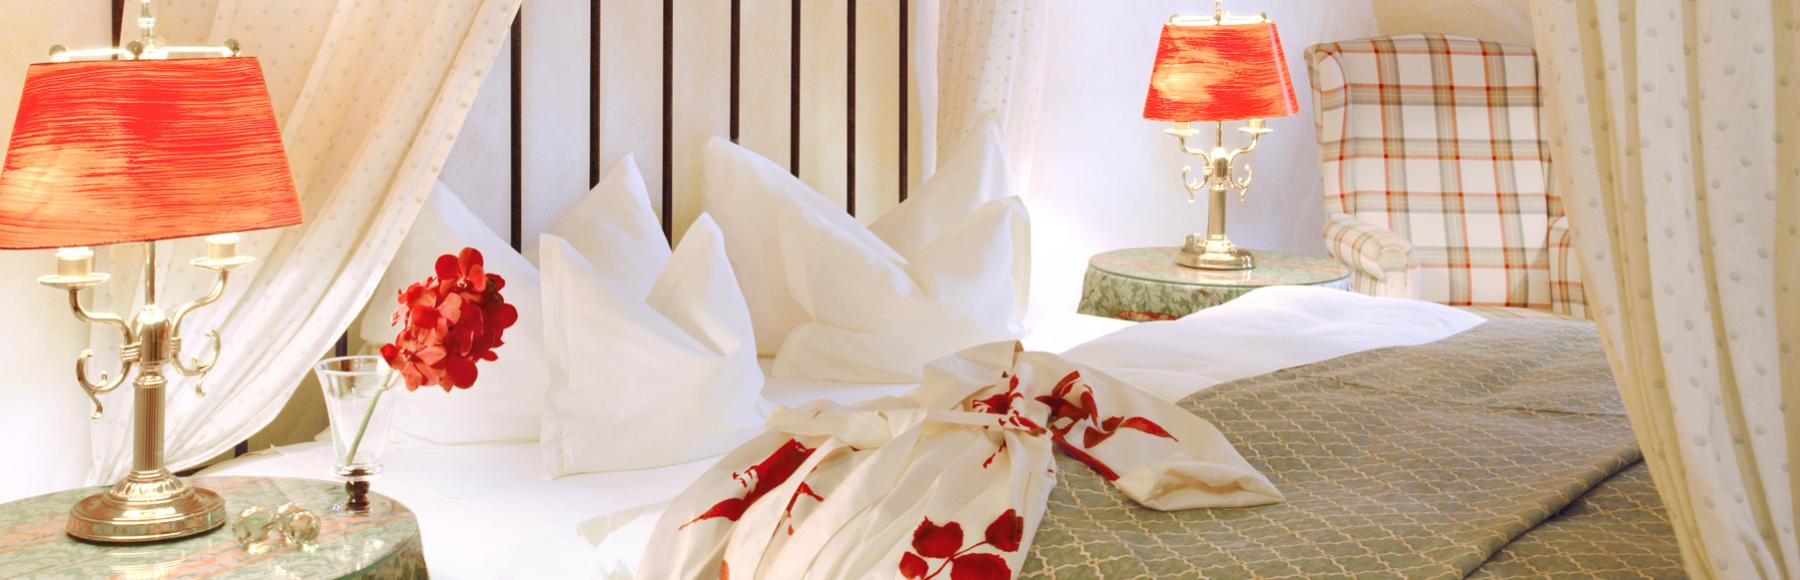 Romantisches Doppelzimmer im Romantik Hotel Jagdhaus Waldidyll